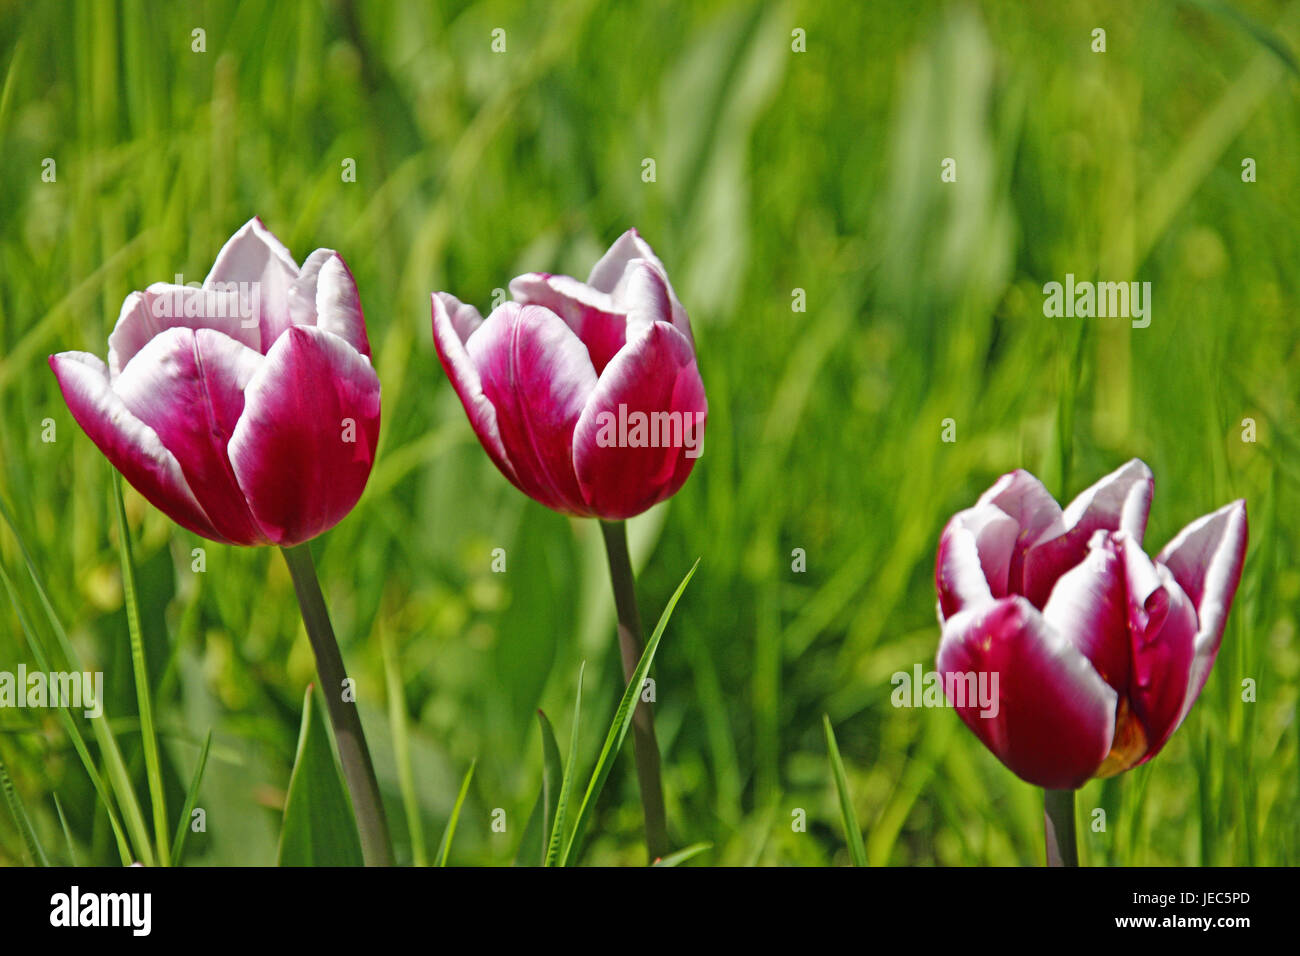 Grass, tulips, blossom, Germany, Baden-Wurttemberg, spring, flowers, spring flowers, tulip blossom, bulb flowers, tulip meadow, Mainau, spring, spring flowers, season, three, Stock Photo